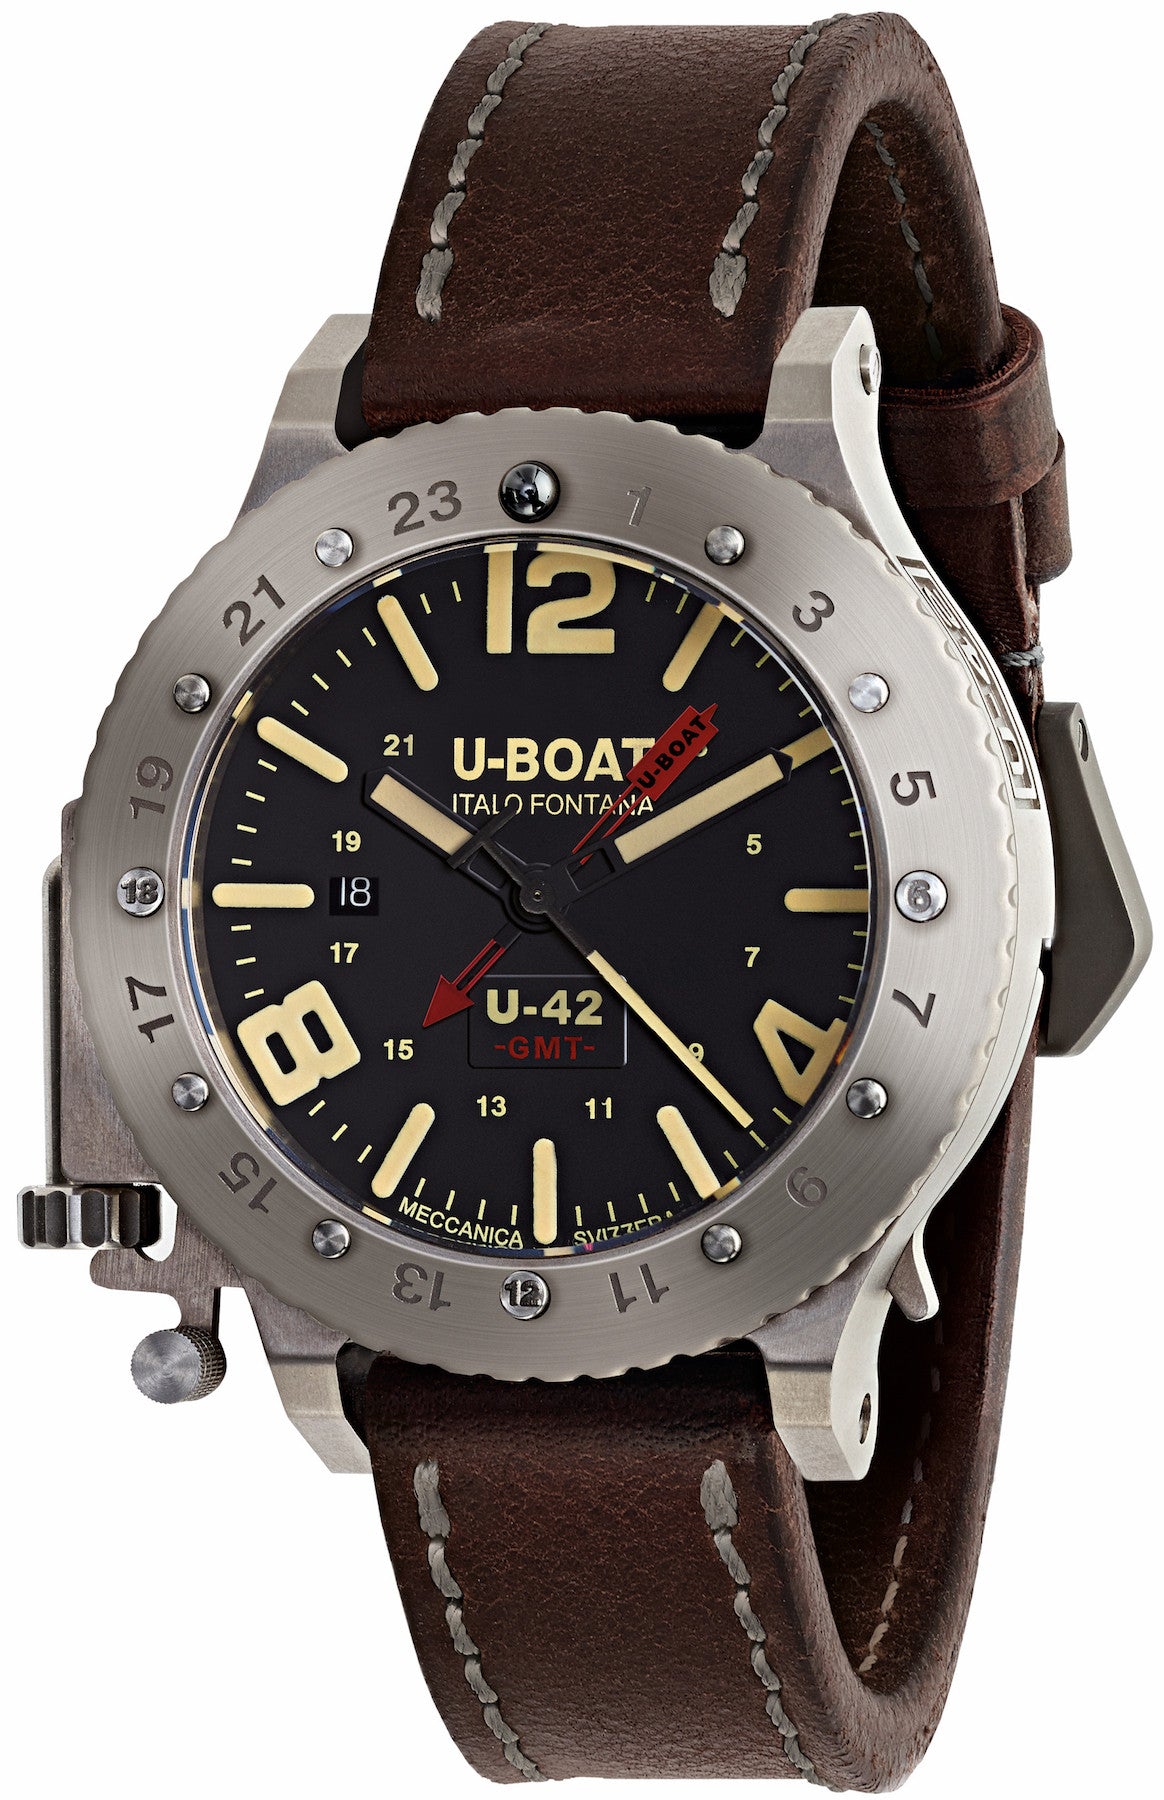 U-Boat Watch U-42 GMT Limited Edition 8095 Watch